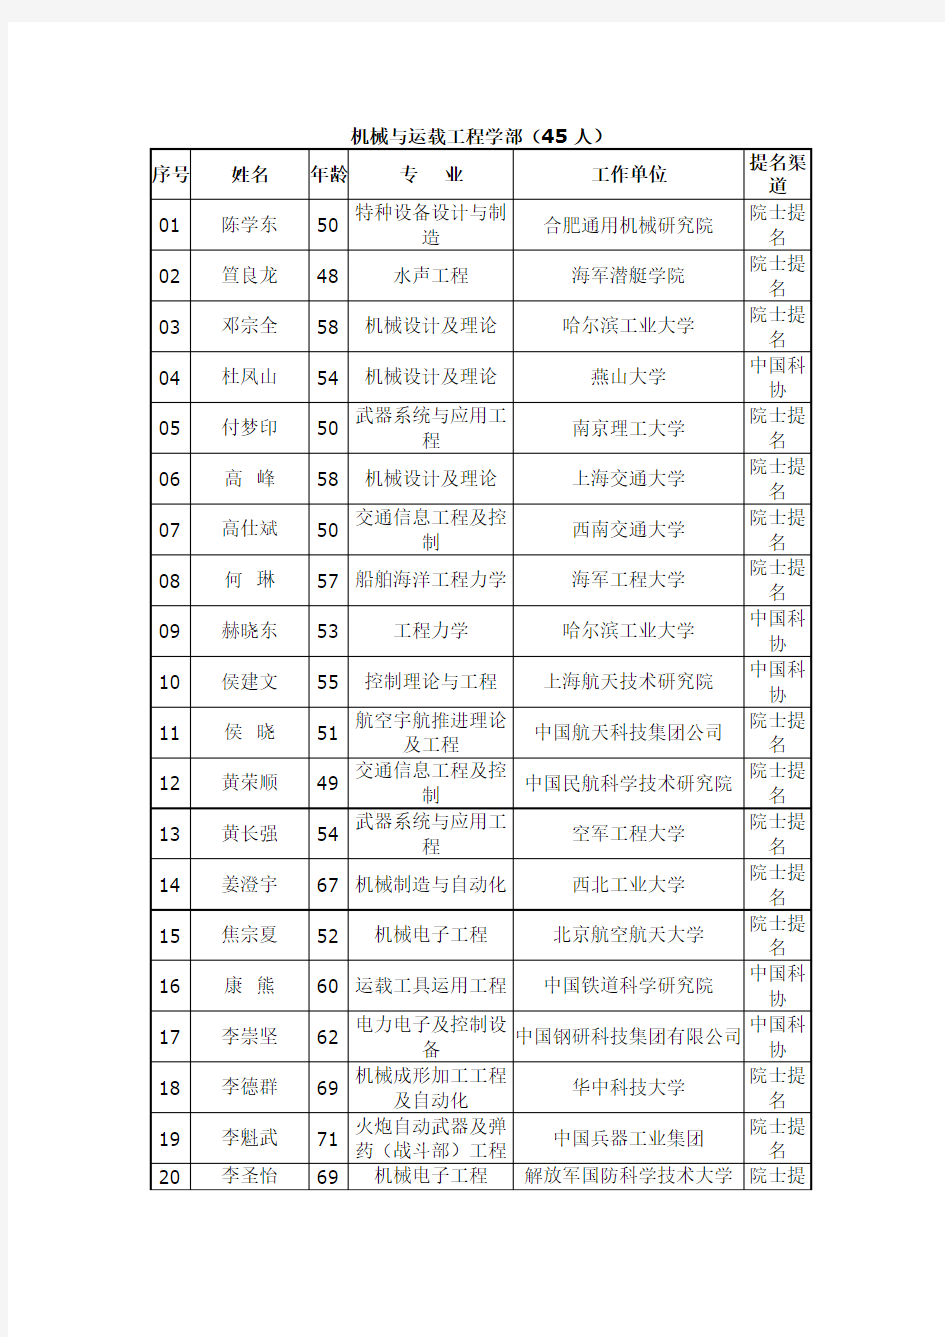 中国工程院2015年院士增选有效候选人名单